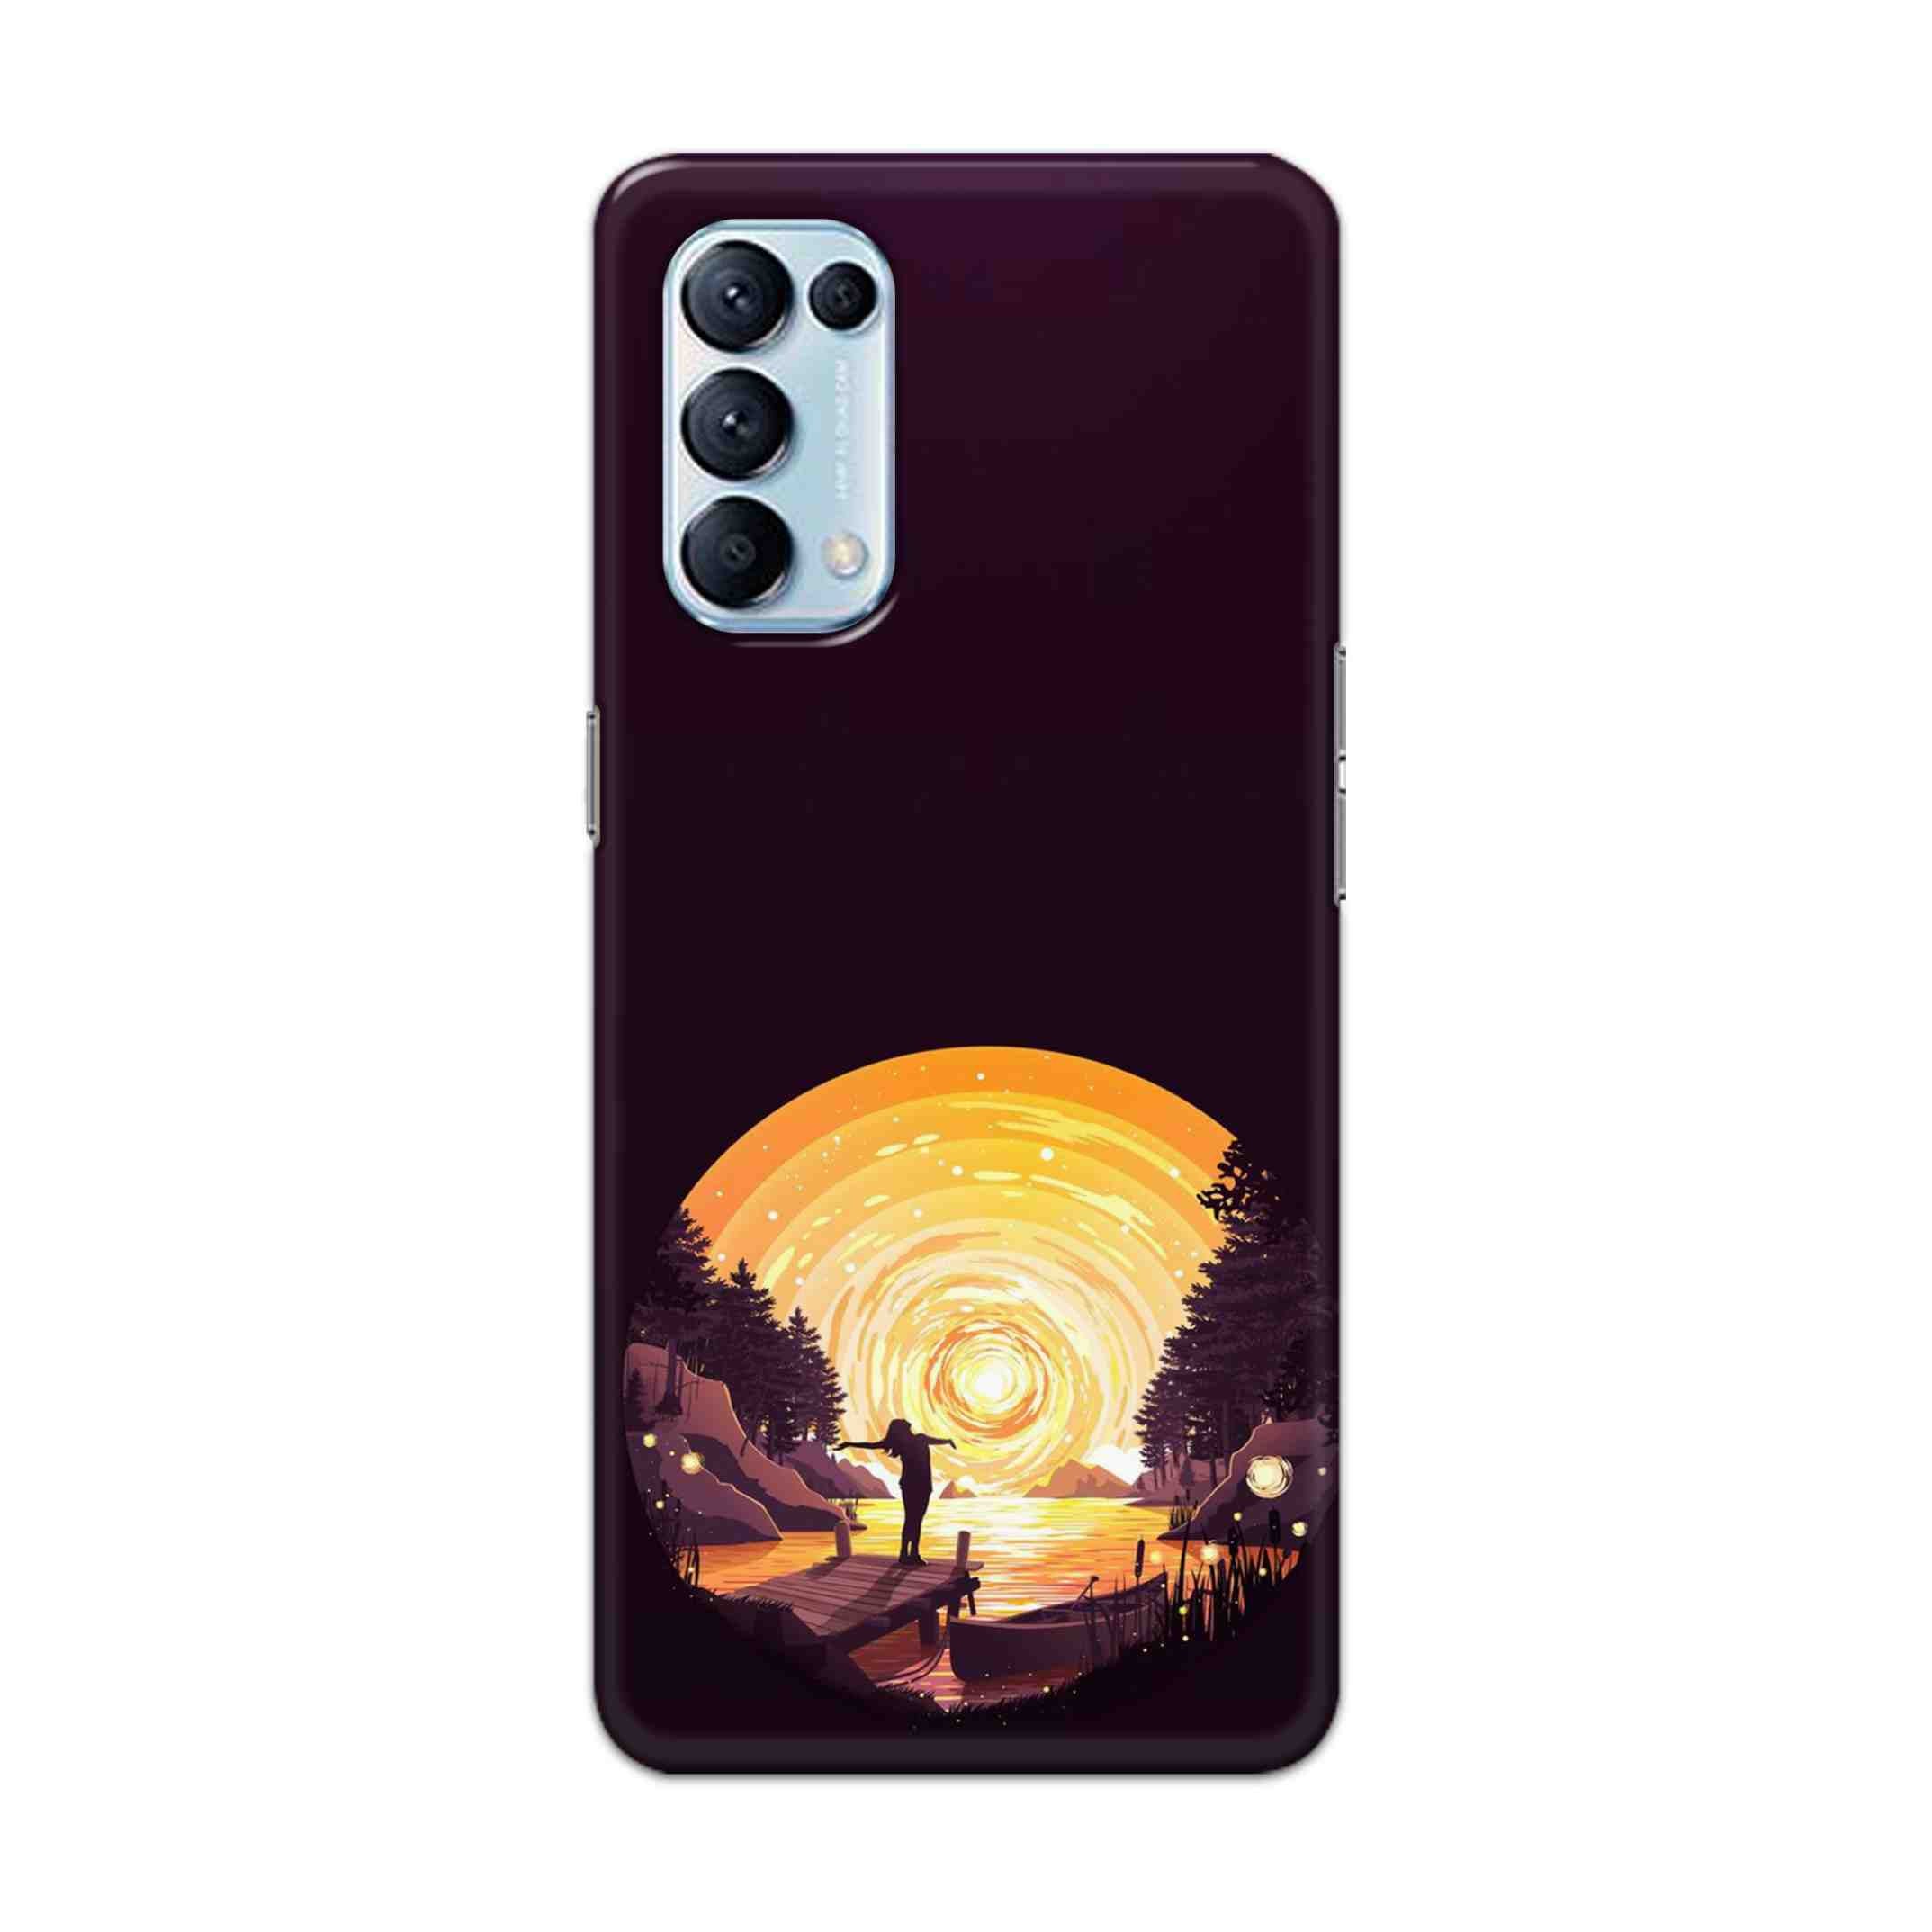 Buy Night Sunrise Hard Back Mobile Phone Case Cover For Oppo Reno 5 Pro 5G Online